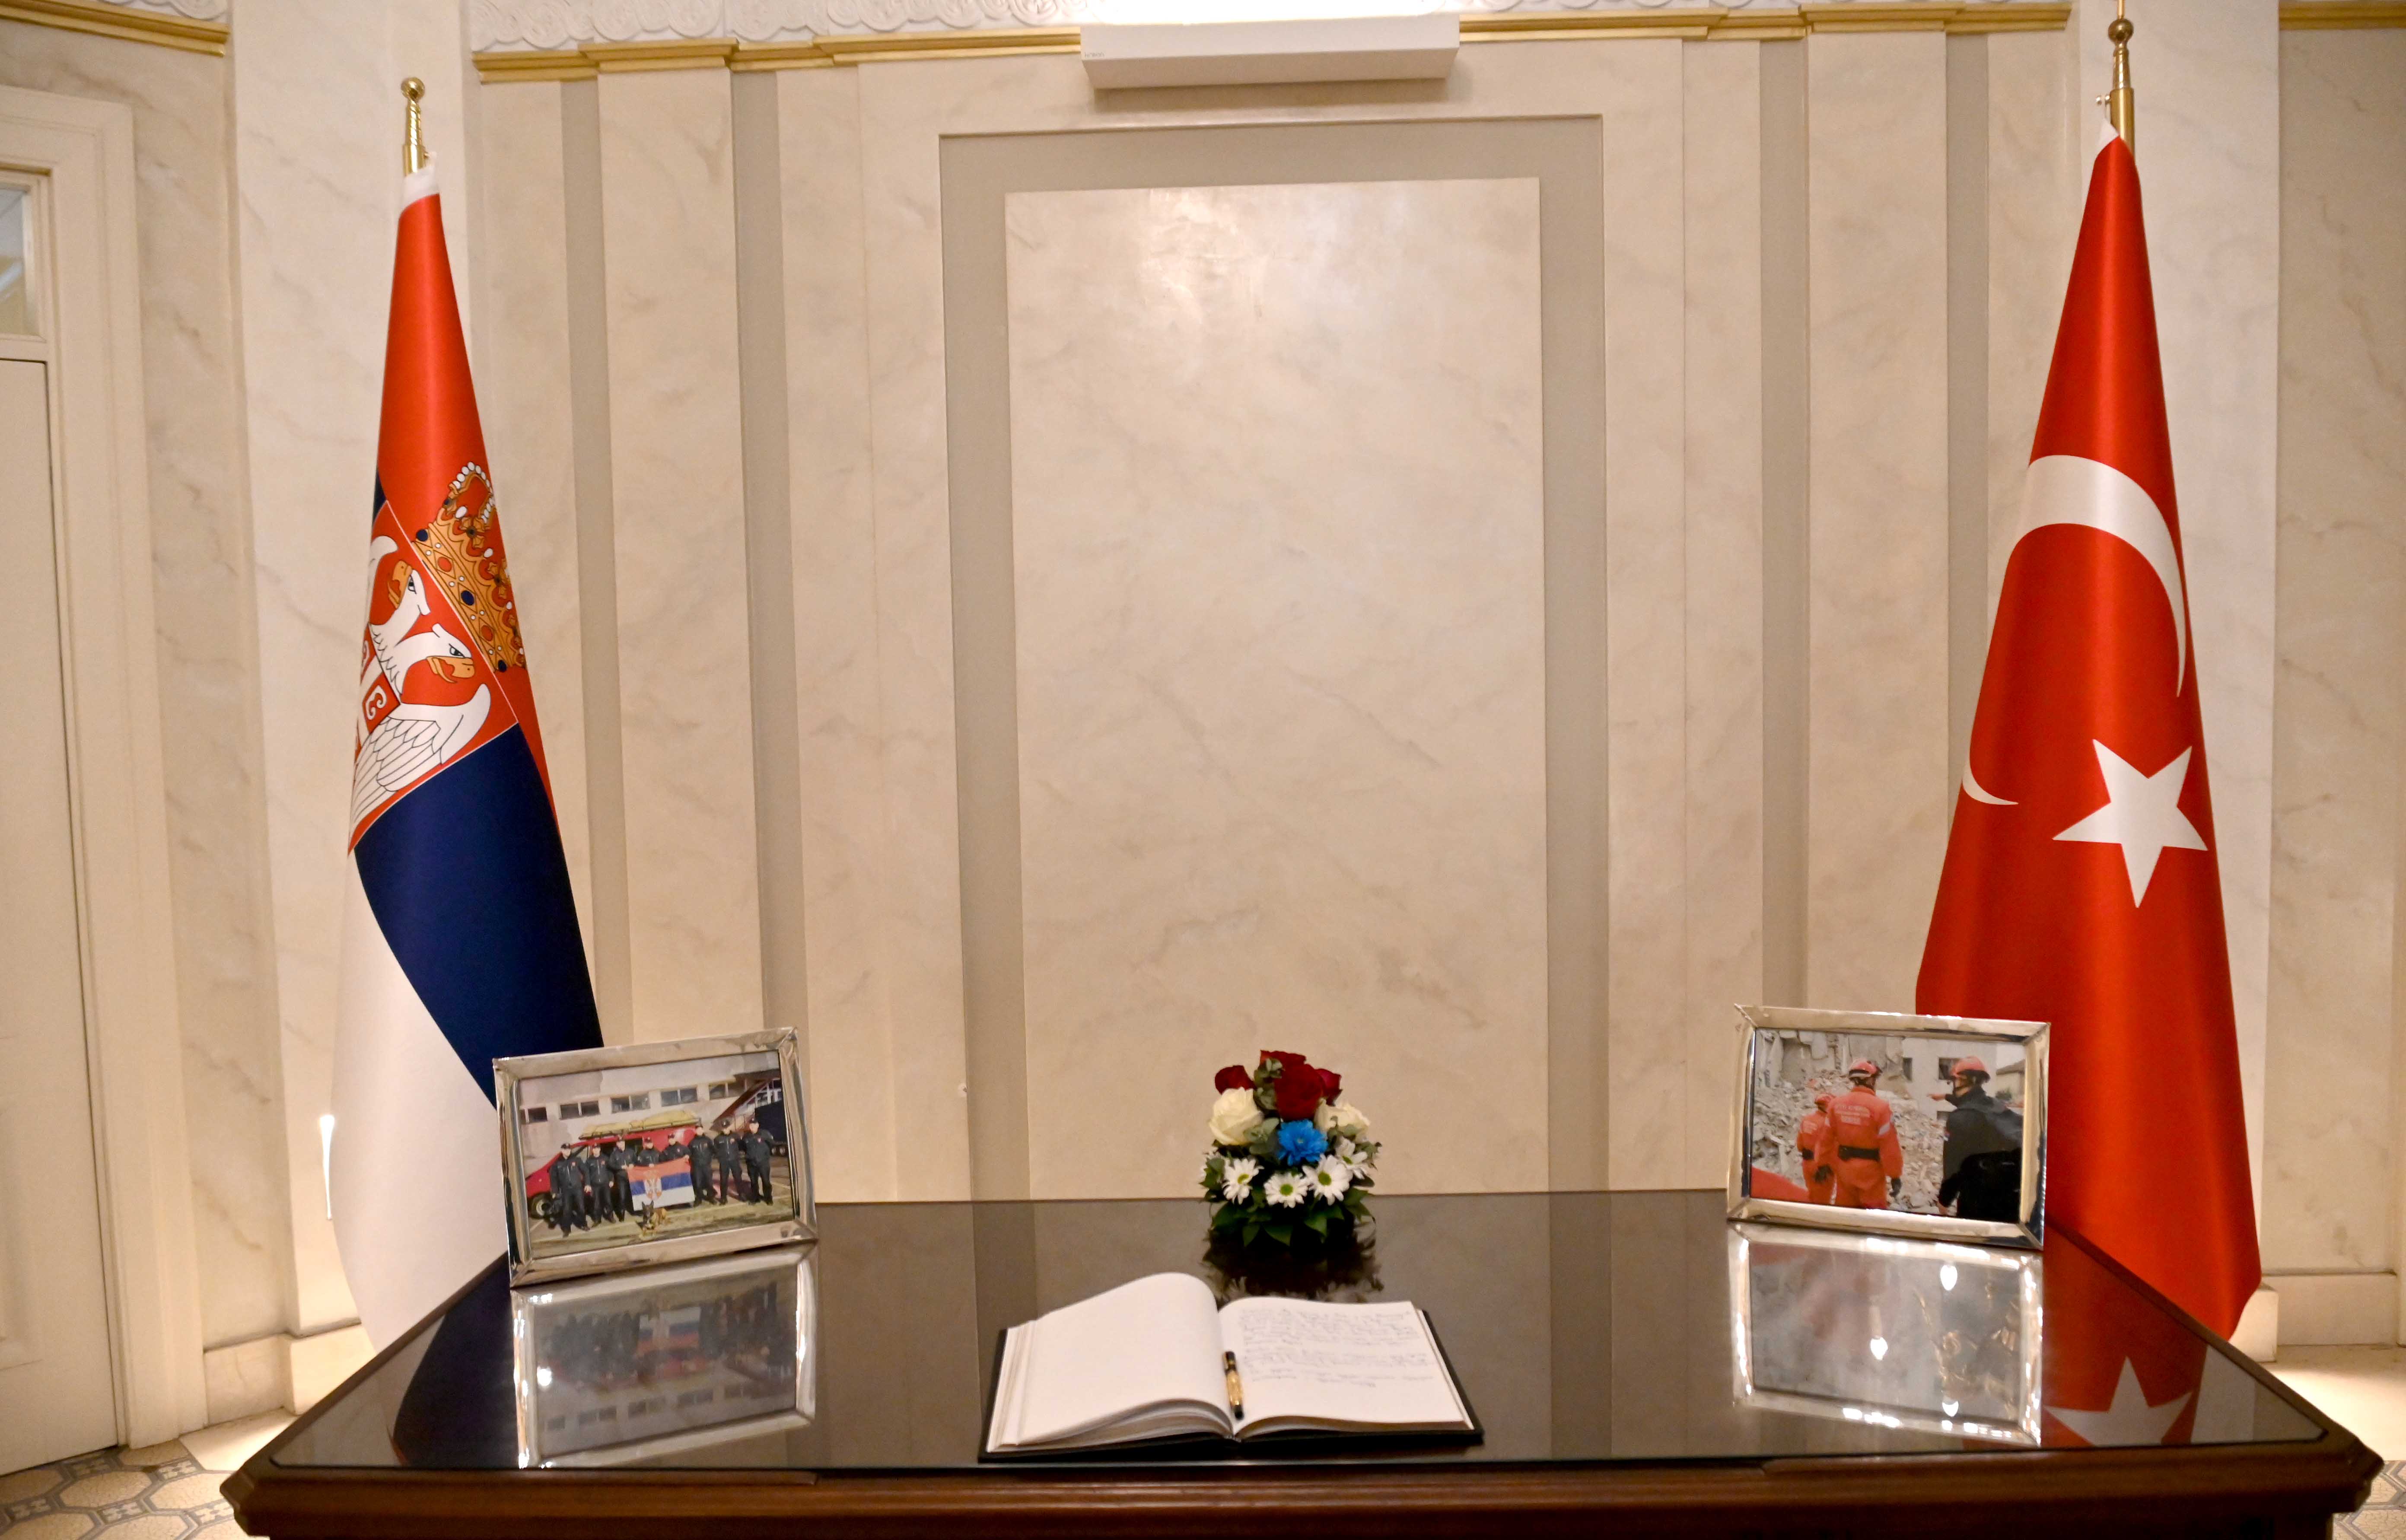 Ministar unutrašnjih poslova Republike Srbije Bratislav Gašić upisao se u knjigu žalosti u Ambasadi Turske